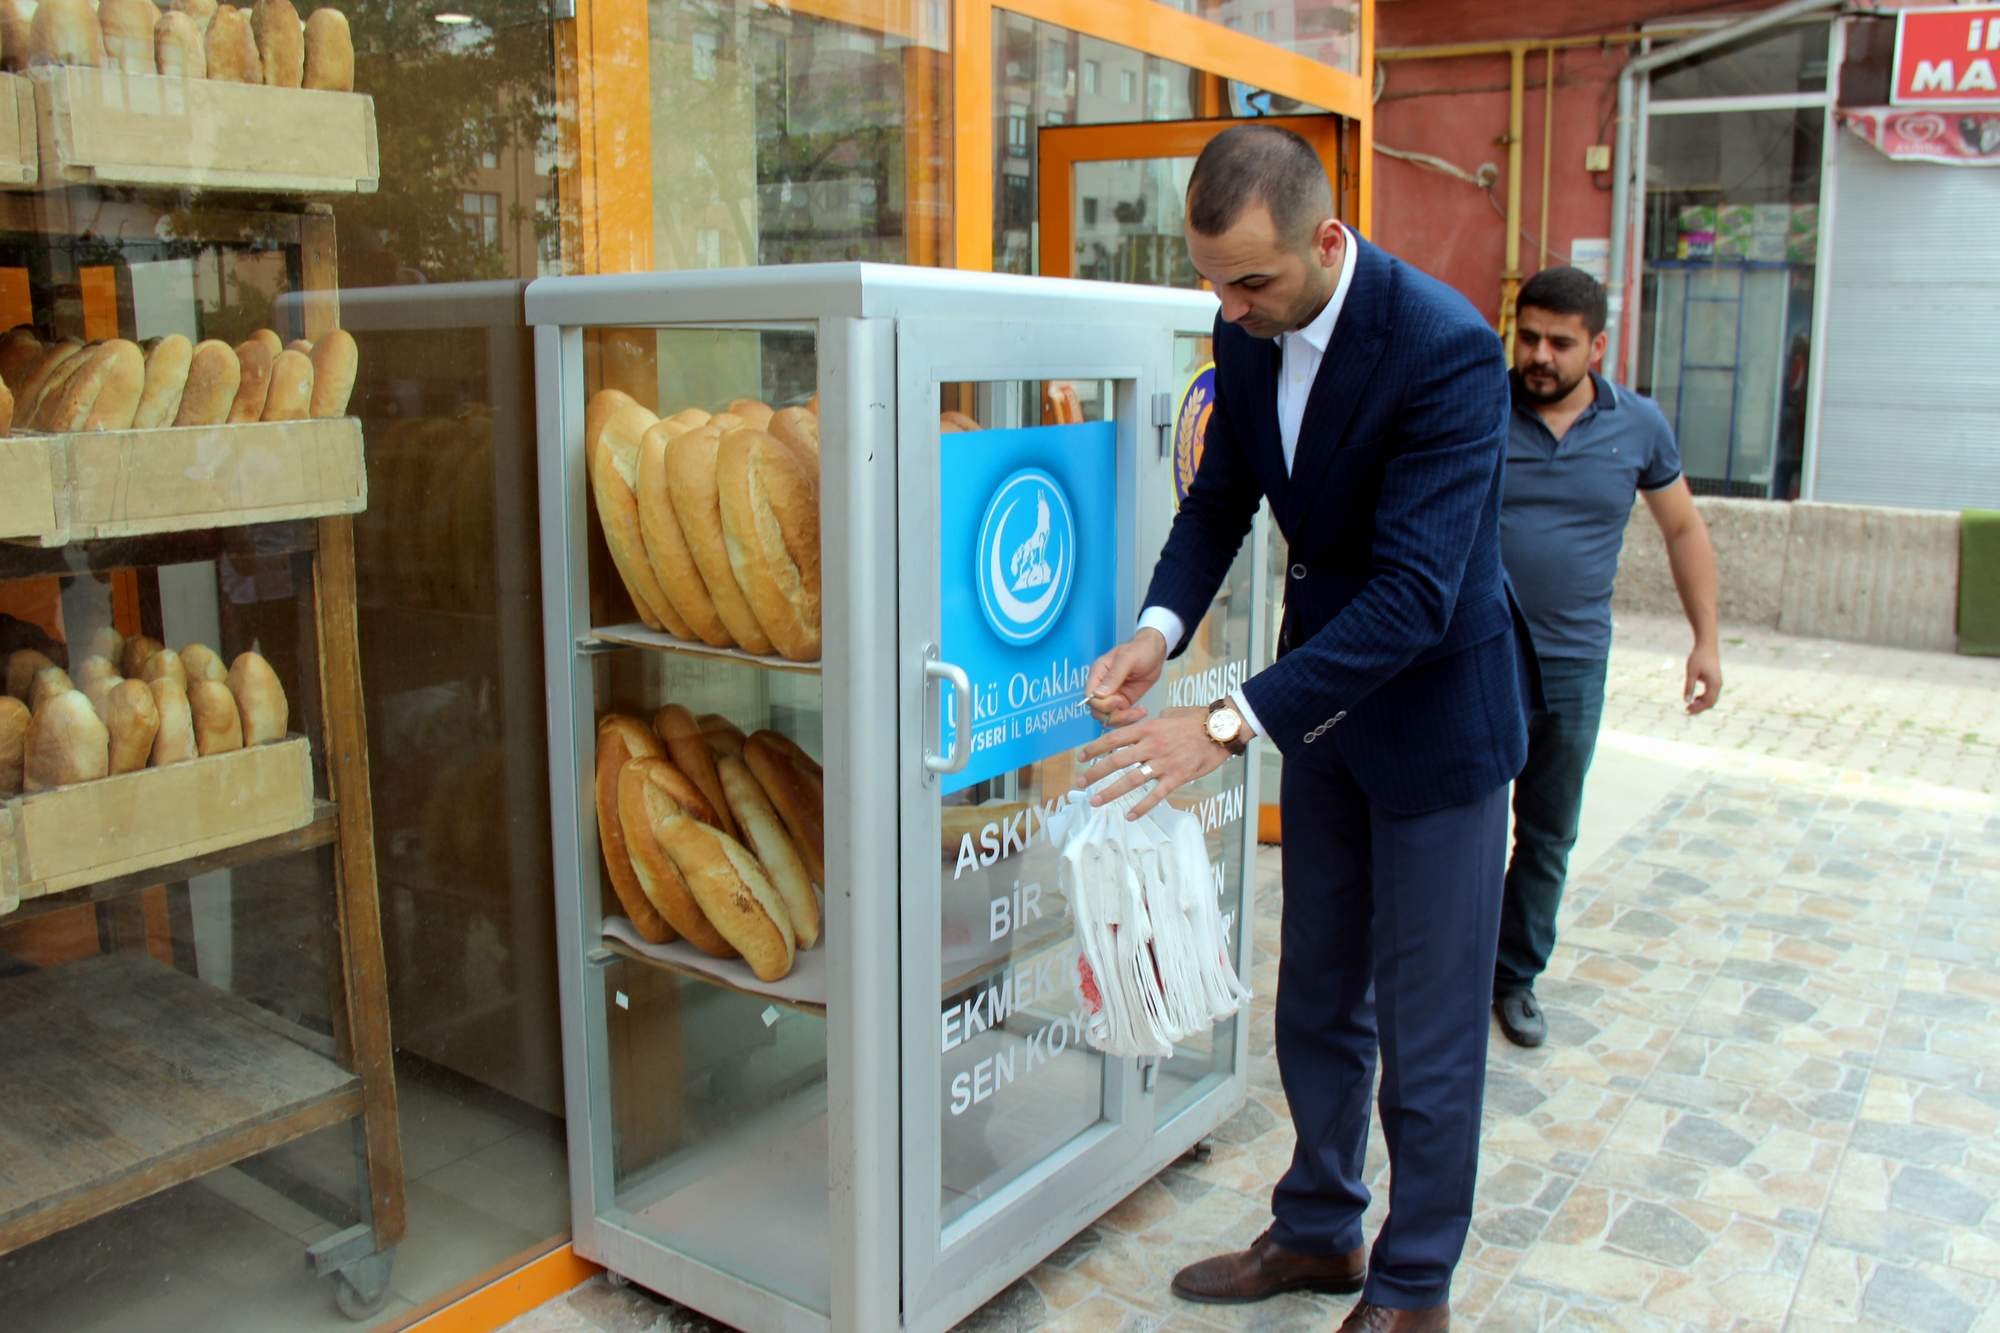 Ülkü Ocakları Kayseri’de Askıda Ekmek Kampanyasını başlattı